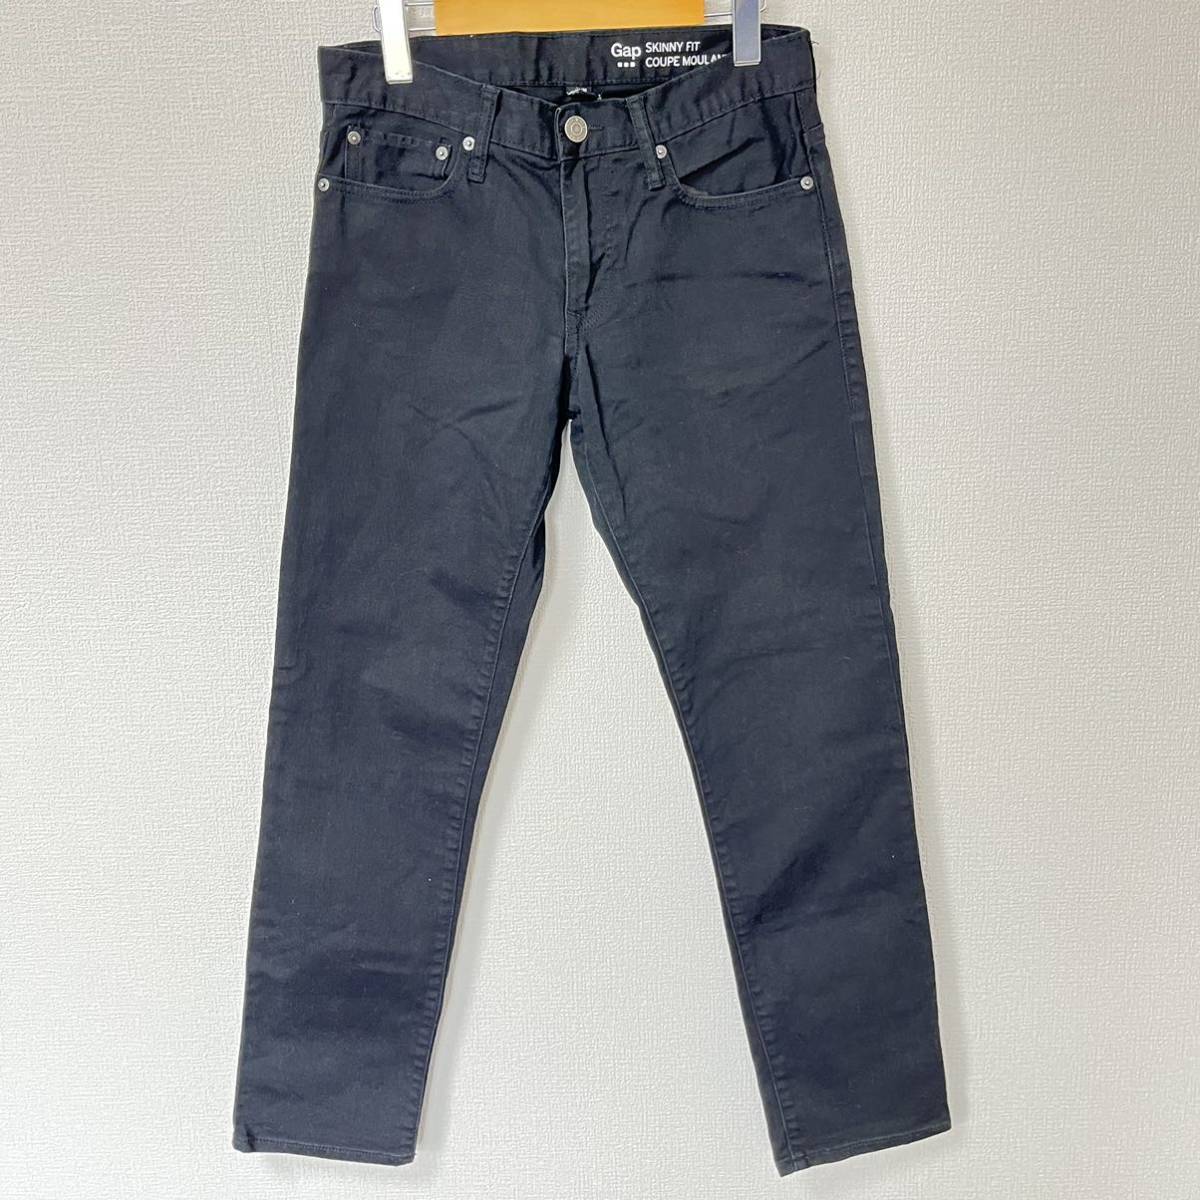 [GAP] Gap обтягивающий Fit Denim брюки хлопок стрейч джинсы ji- хлеб Basic American Casual черный чёрный мужской W29/Y4492YY